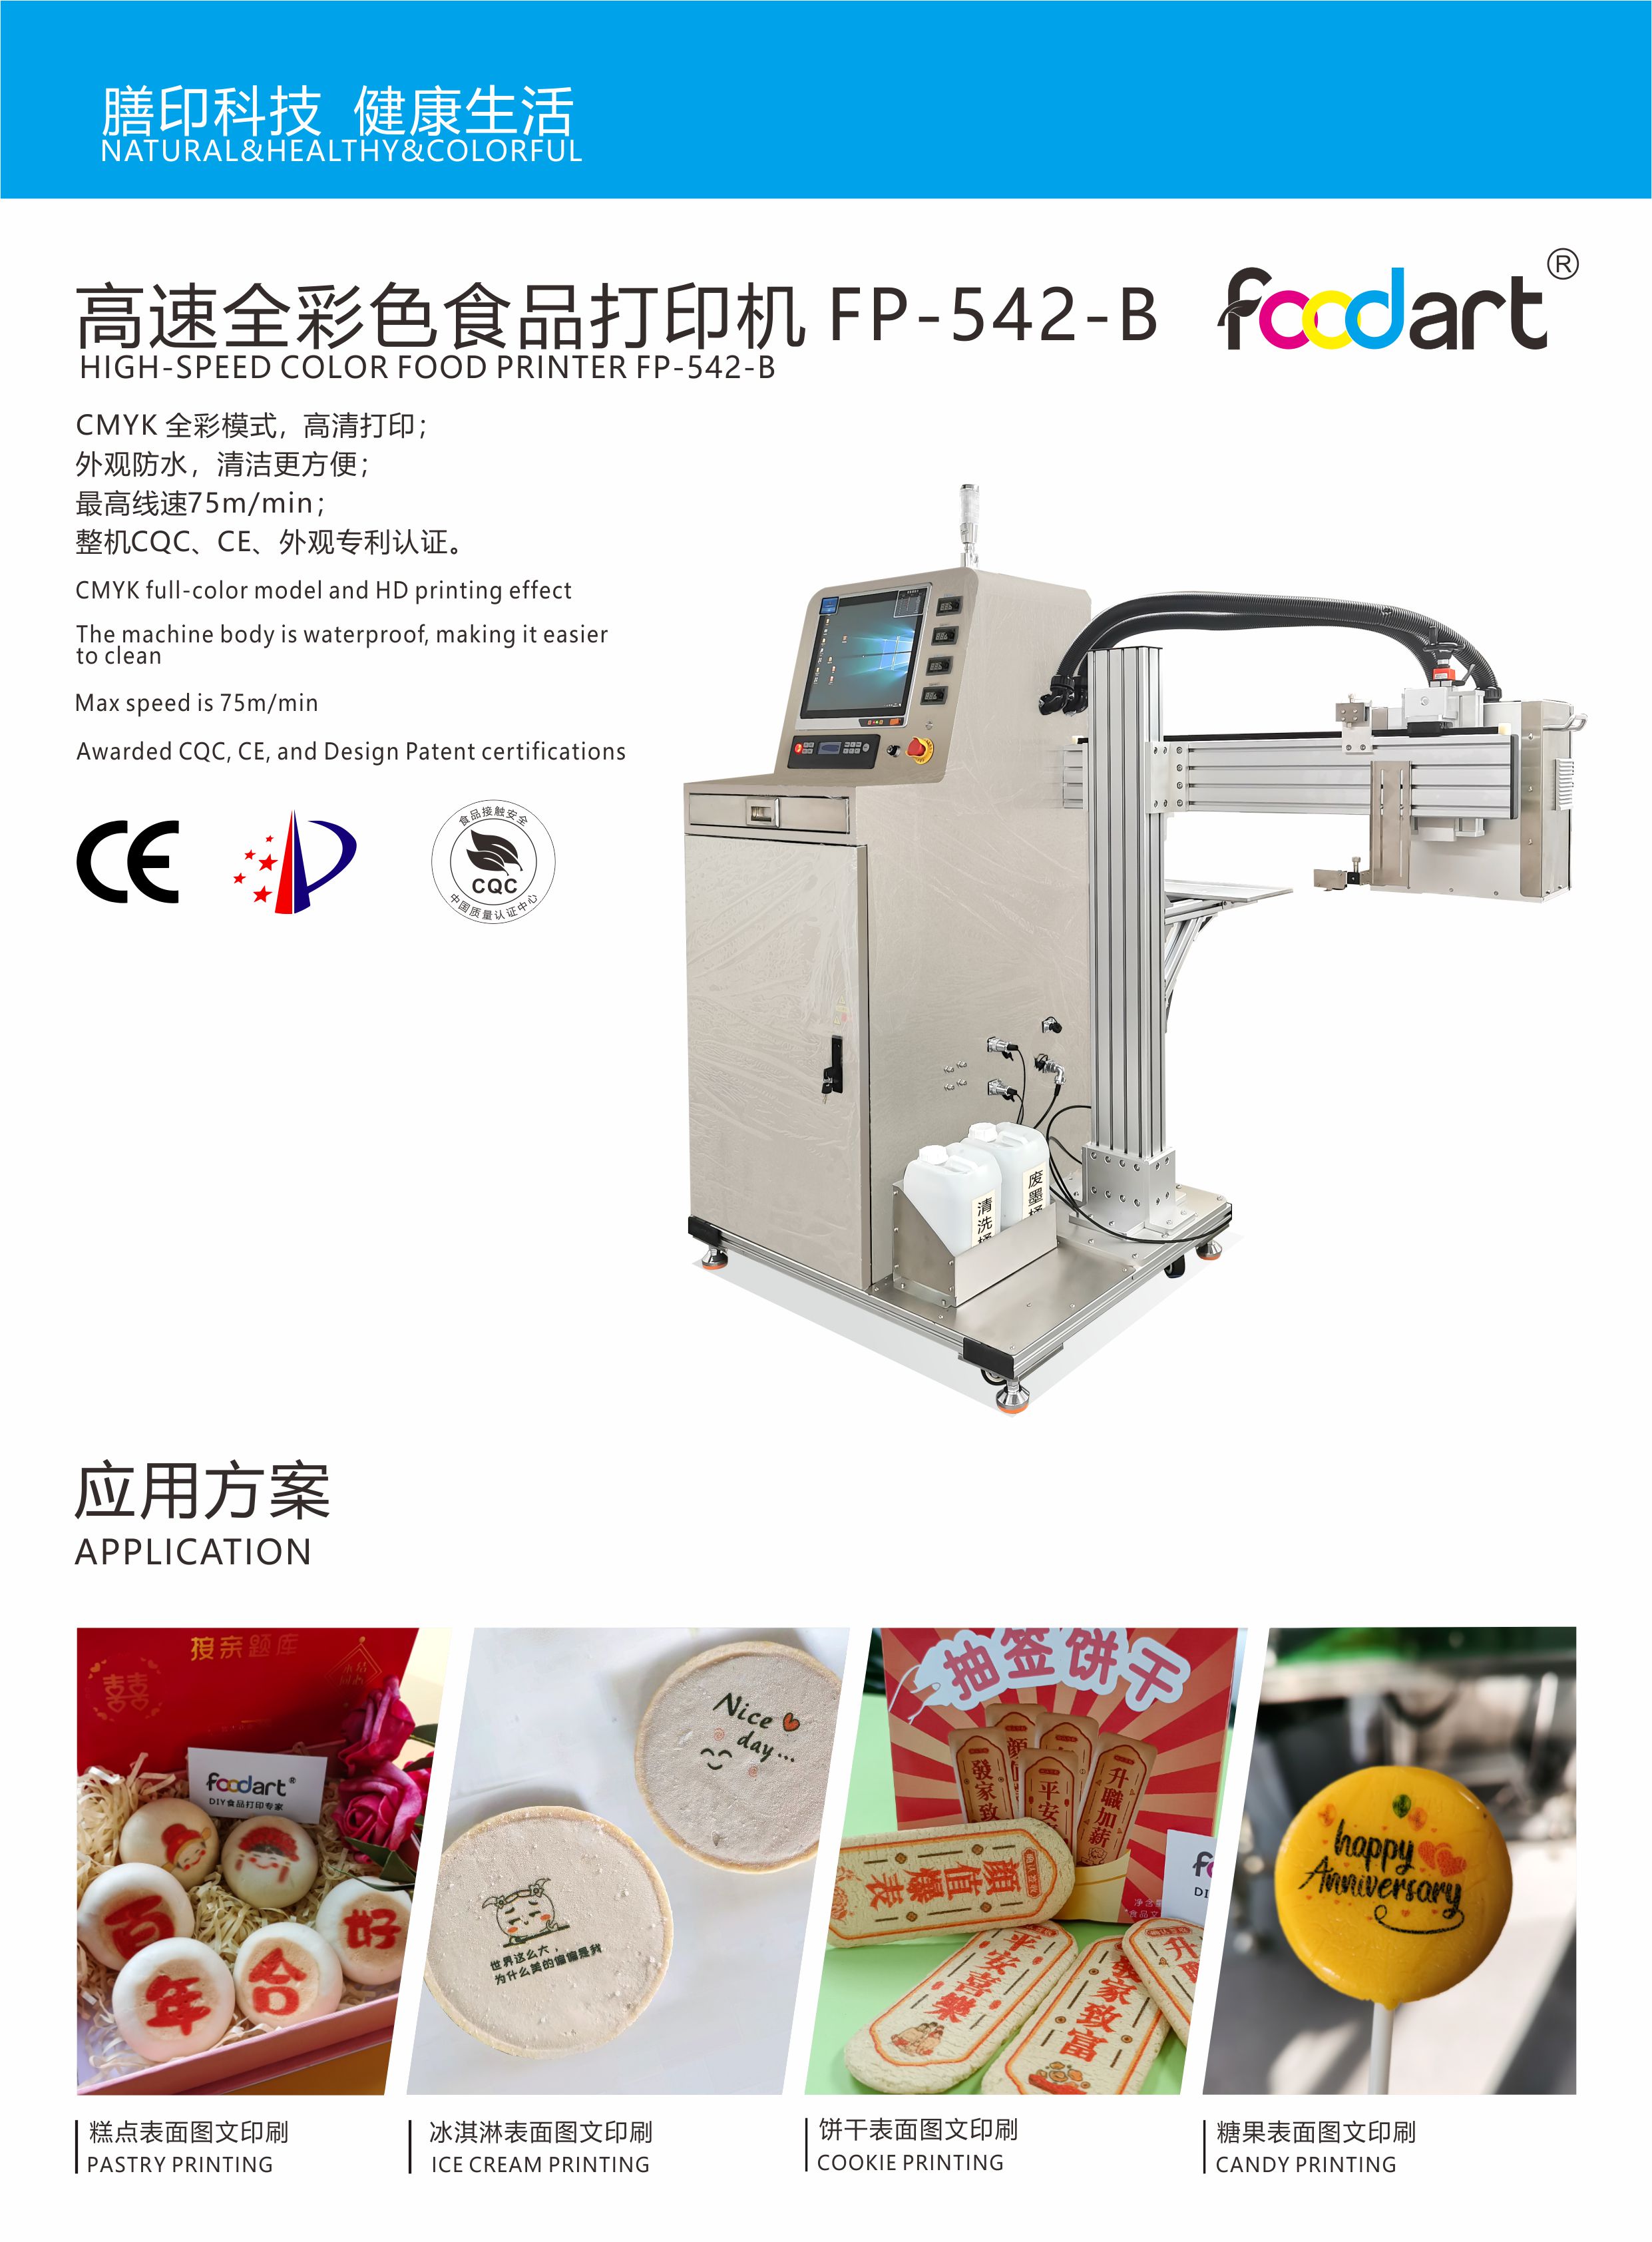 膳印fp-542全彩色高速食品打印机烘焙印花设备